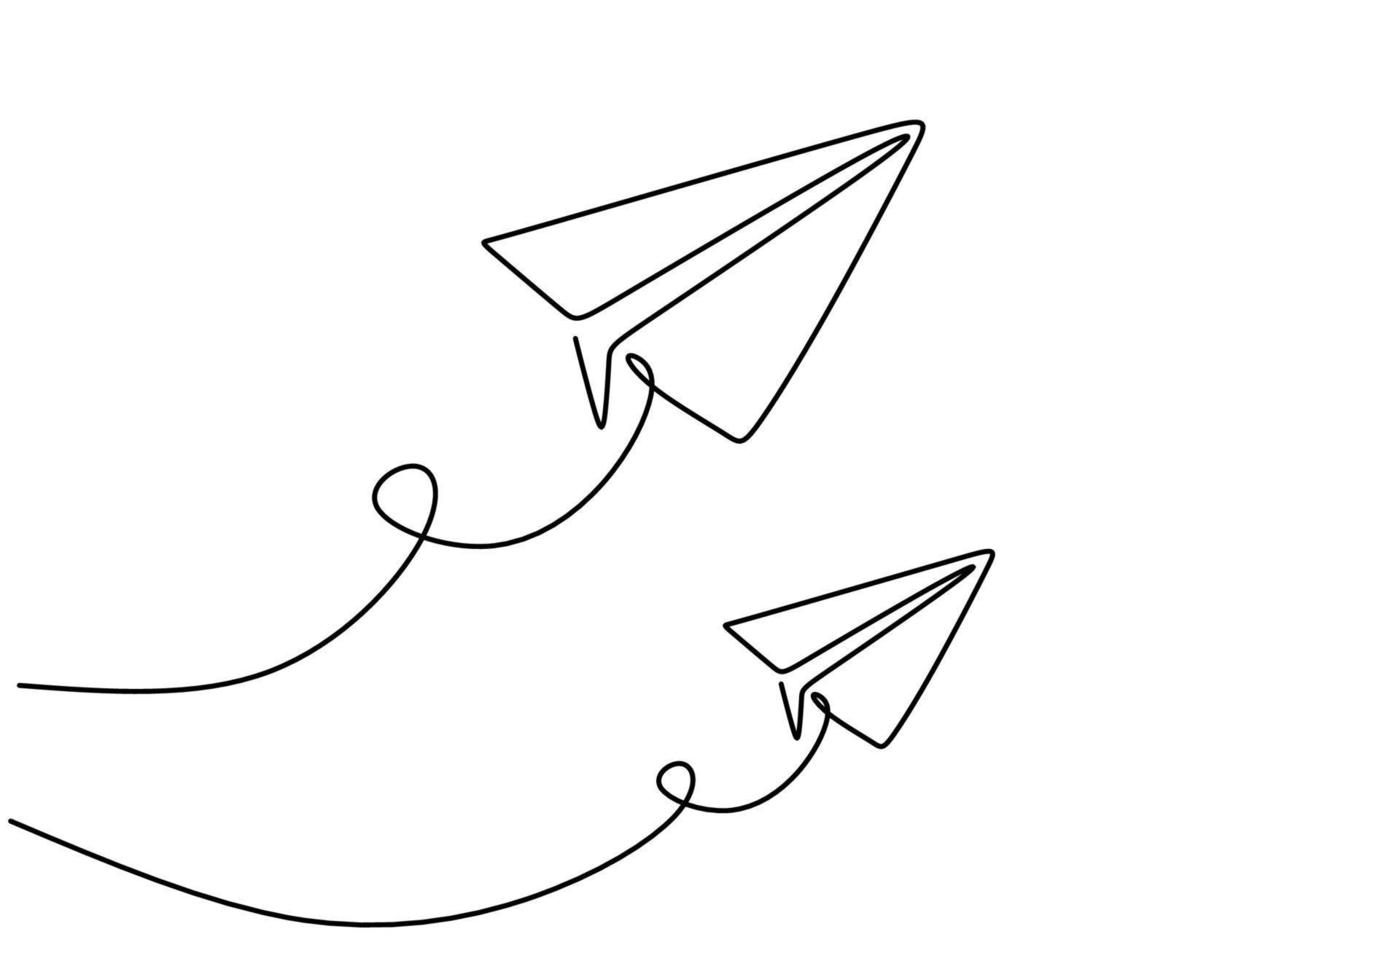 eine durchgehende einzeilige handzeichnung von zwei papierflugzeugen vektor